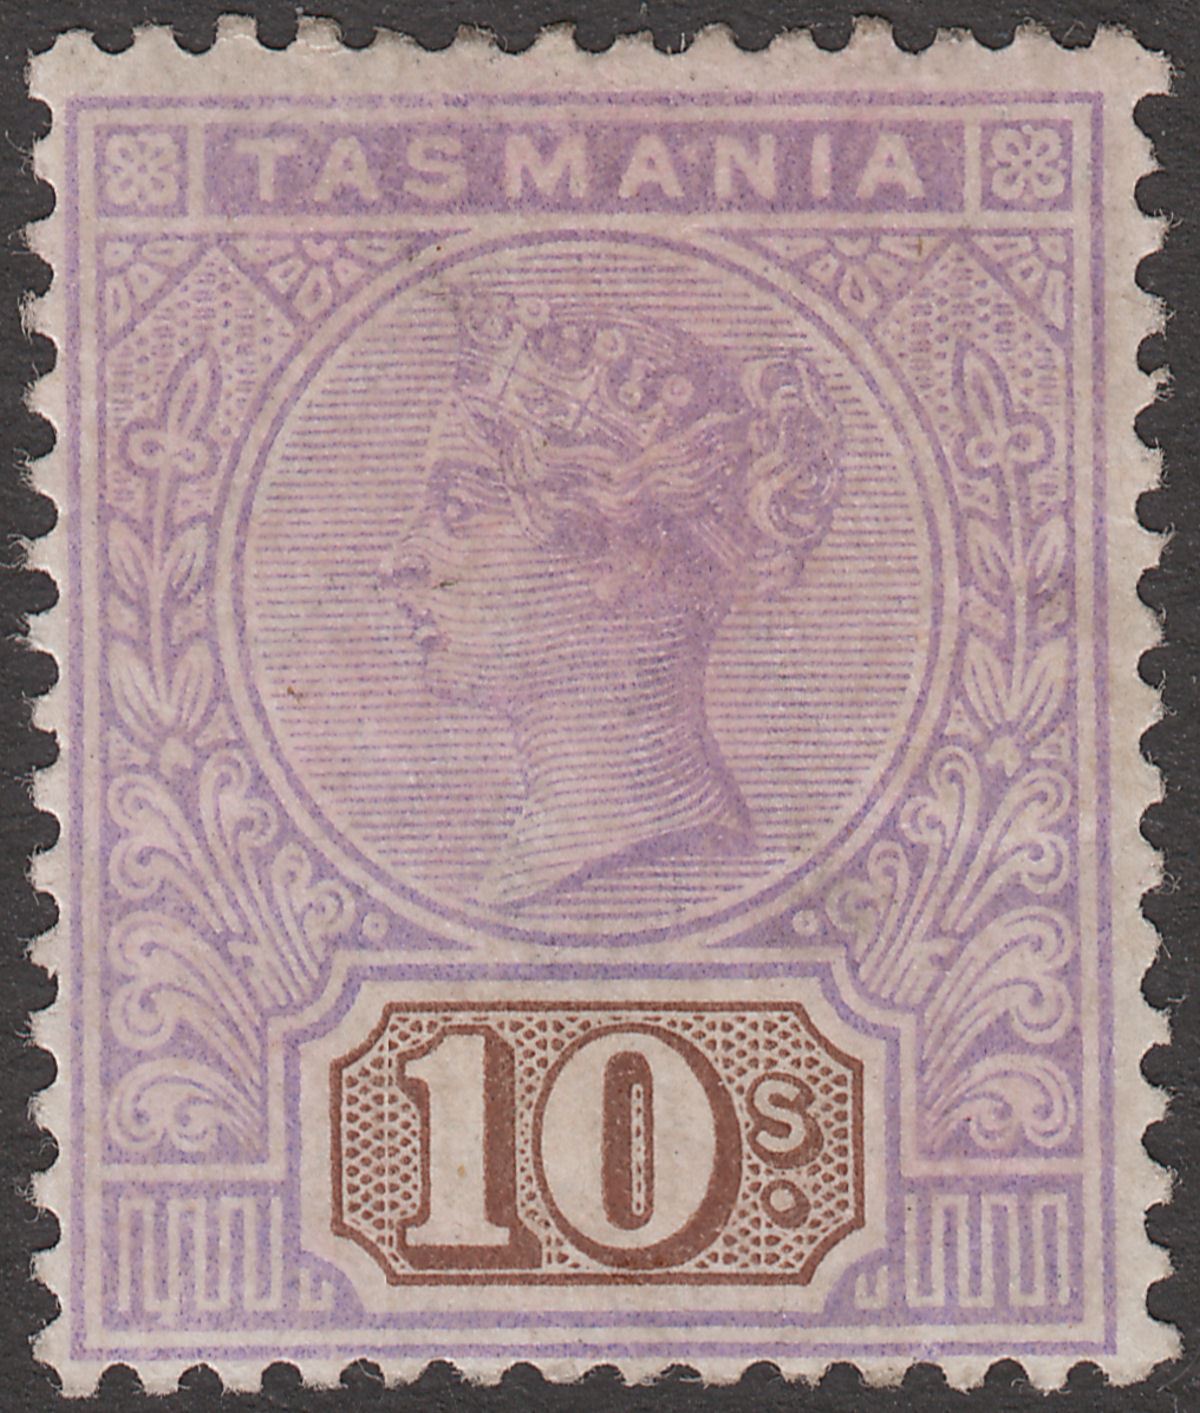 Tasmania 1892 Queen Victoria 10sh Mauve and Brown Mint SG224 cat £190